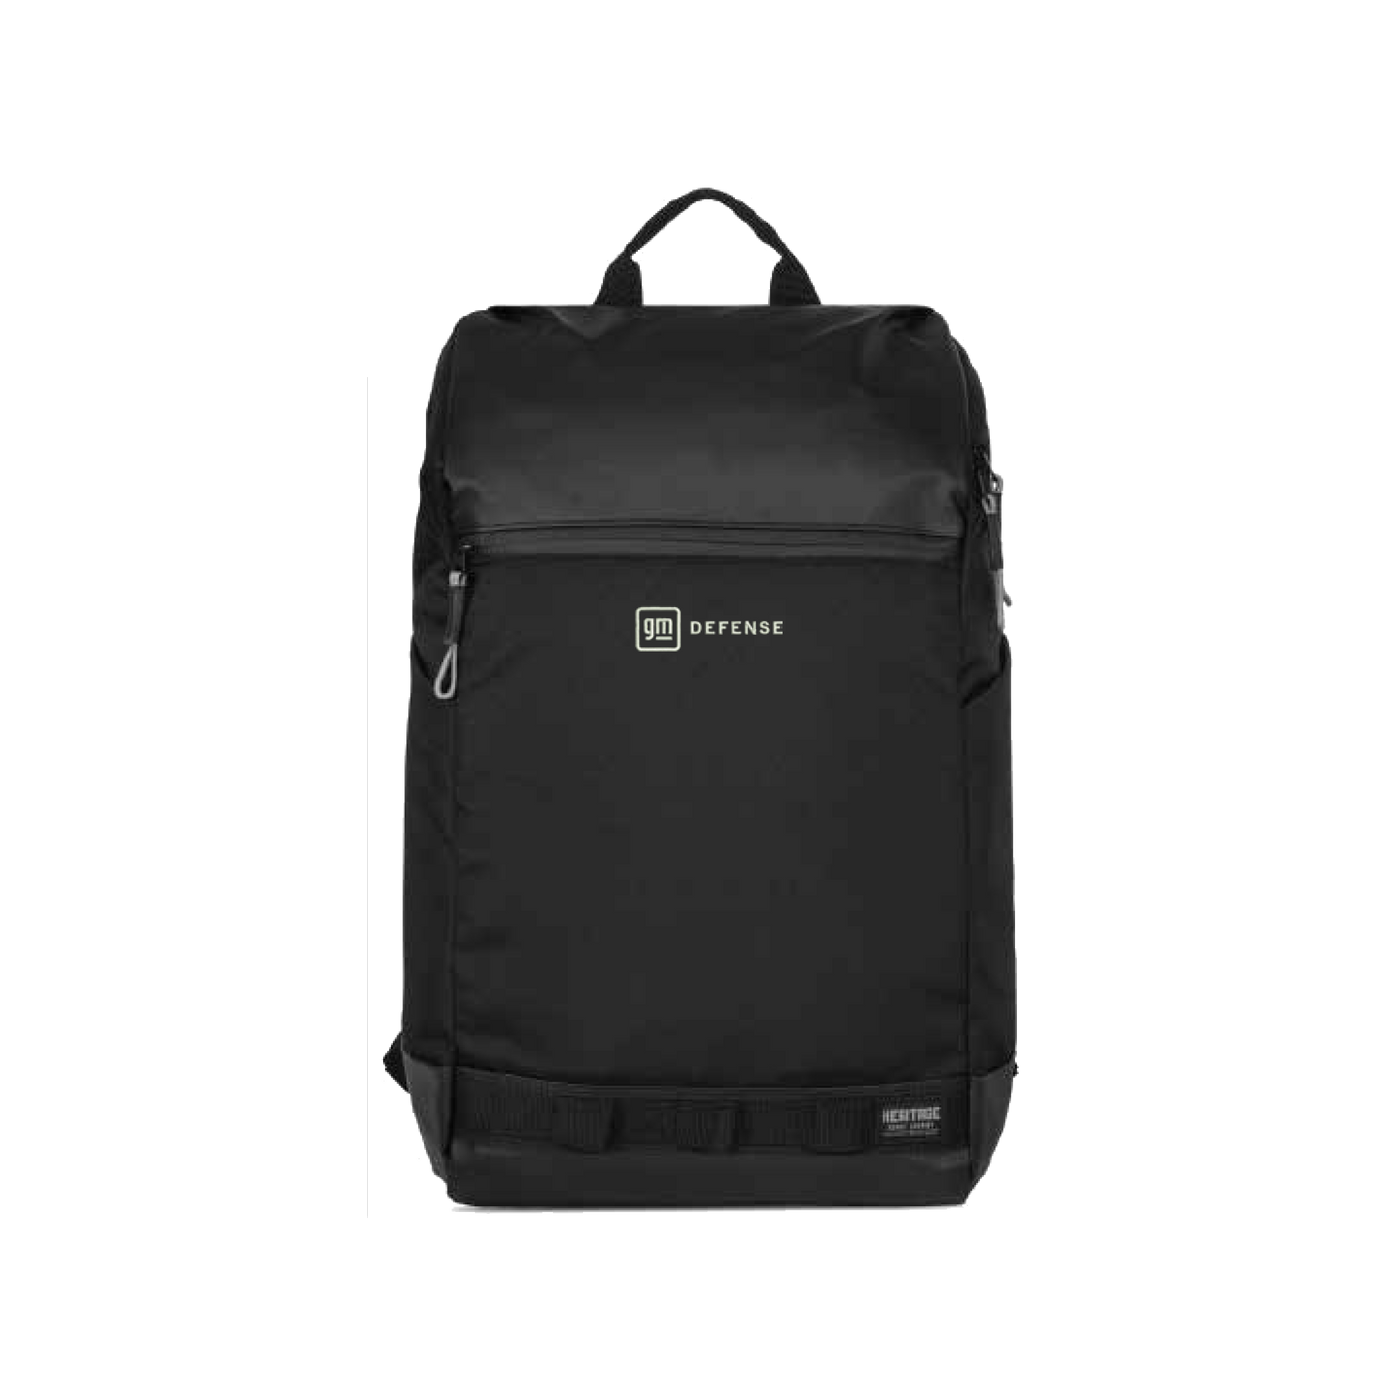 GM Defense Backpack